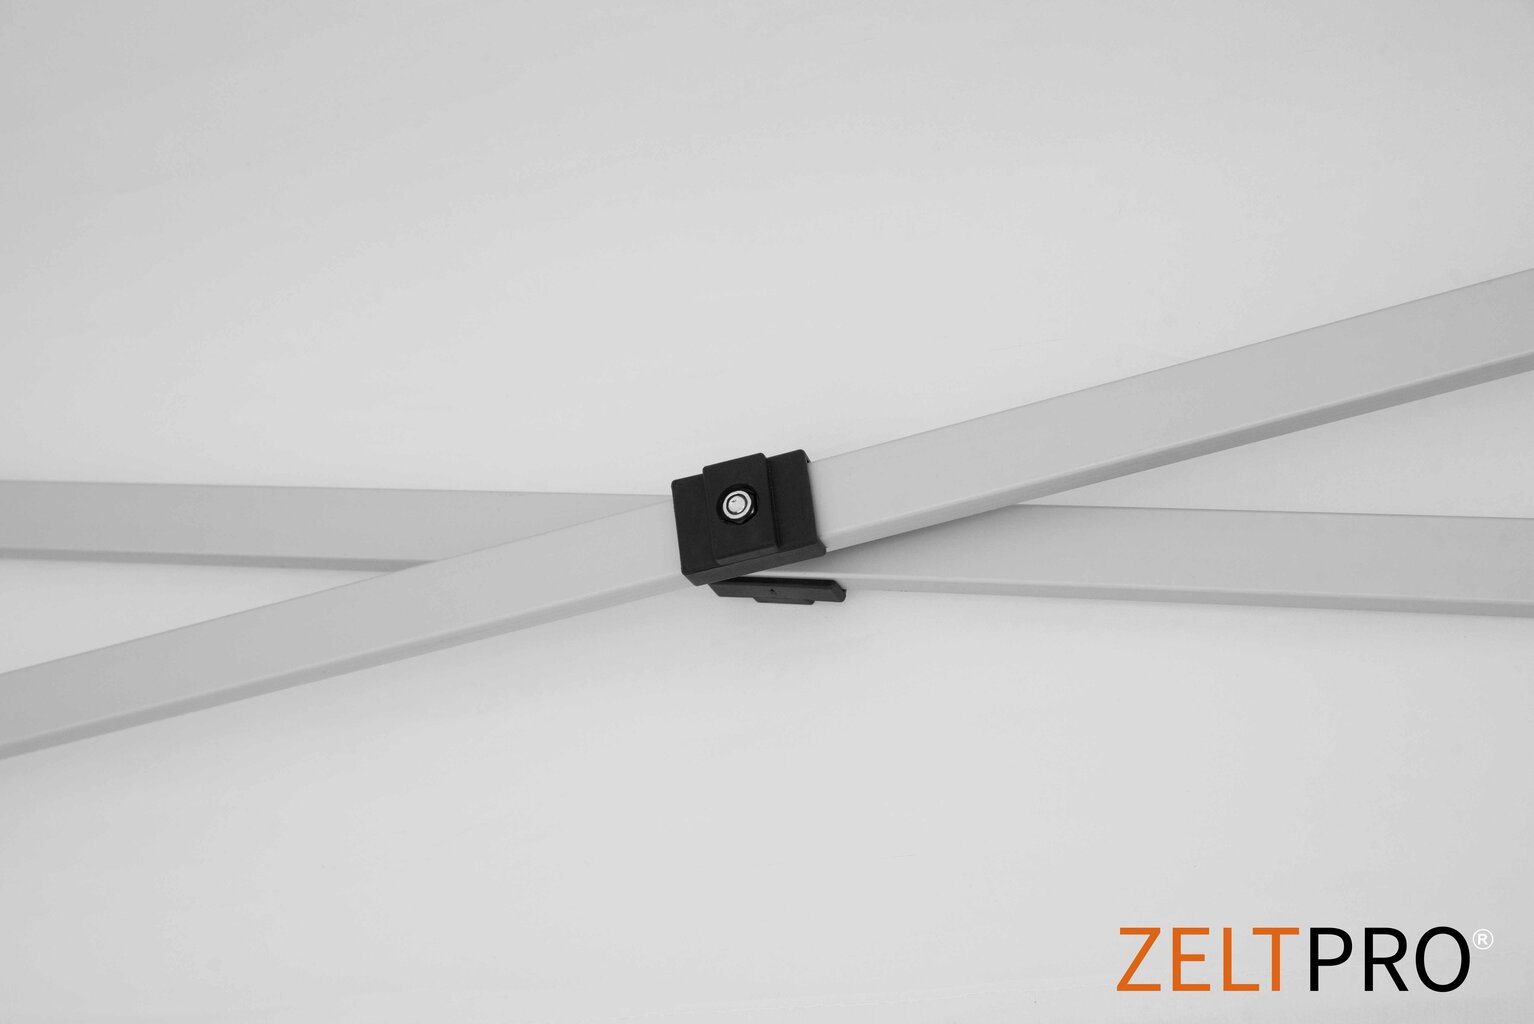 Prekybinė palapinė Zeltpro TITAN Balta, 3x6 kaina ir informacija | Palapinės | pigu.lt